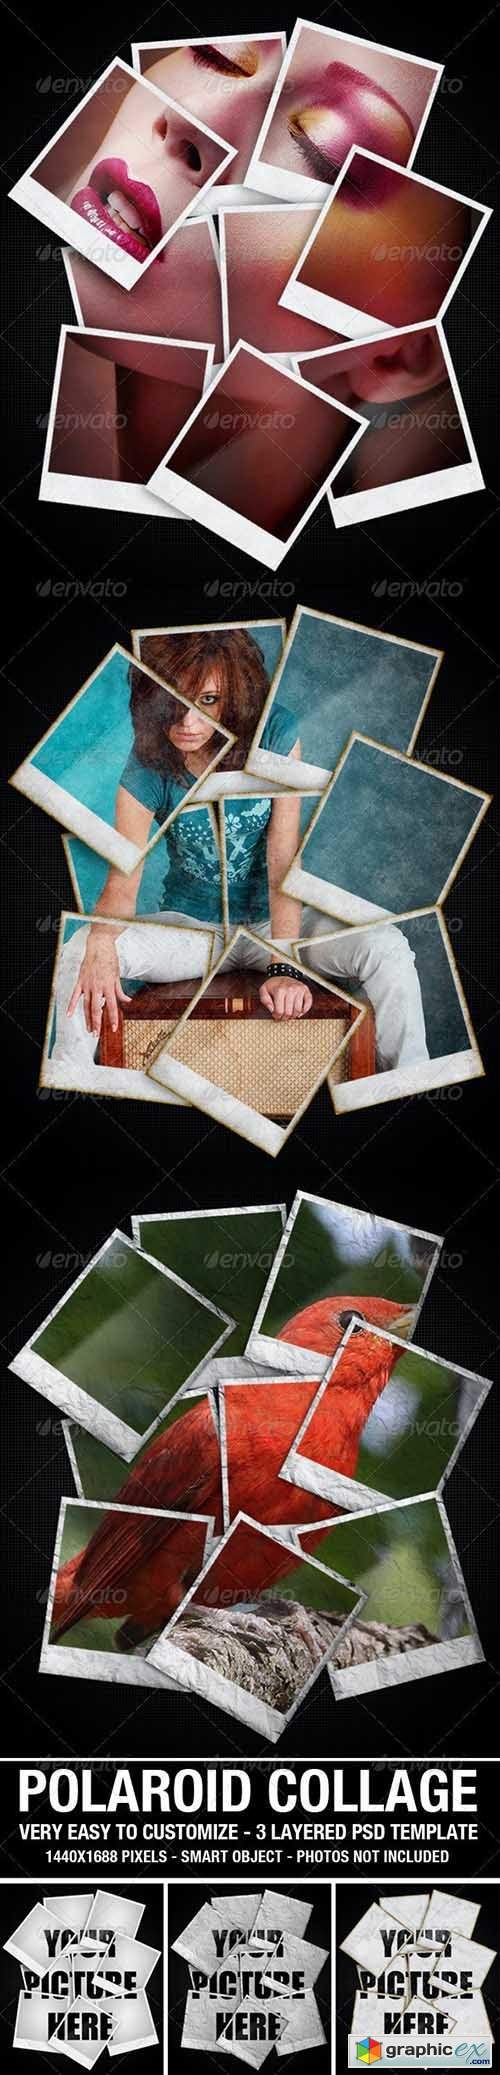 Polaroid Collage Photo Template 2627722